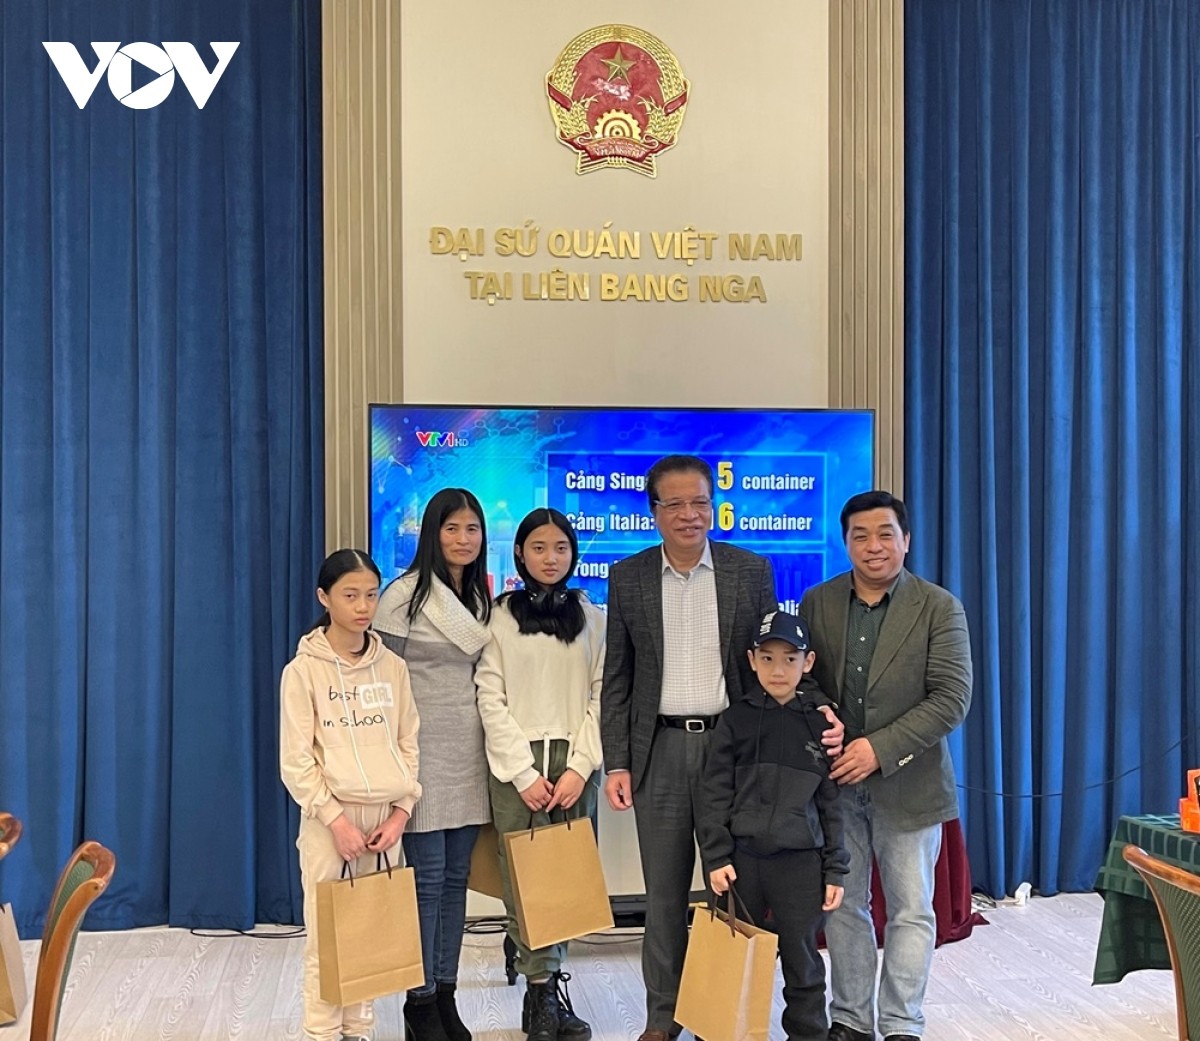 Đại sứ Đặng Minh Khôi và ông Trần Phú Thuận-phó chủ tịch thường trực Hội người Việt Nam tại LB Nga chụp ảnh lưu niệm cùng 4 mẹ con chị Nguyễn Thị Bích Vân.